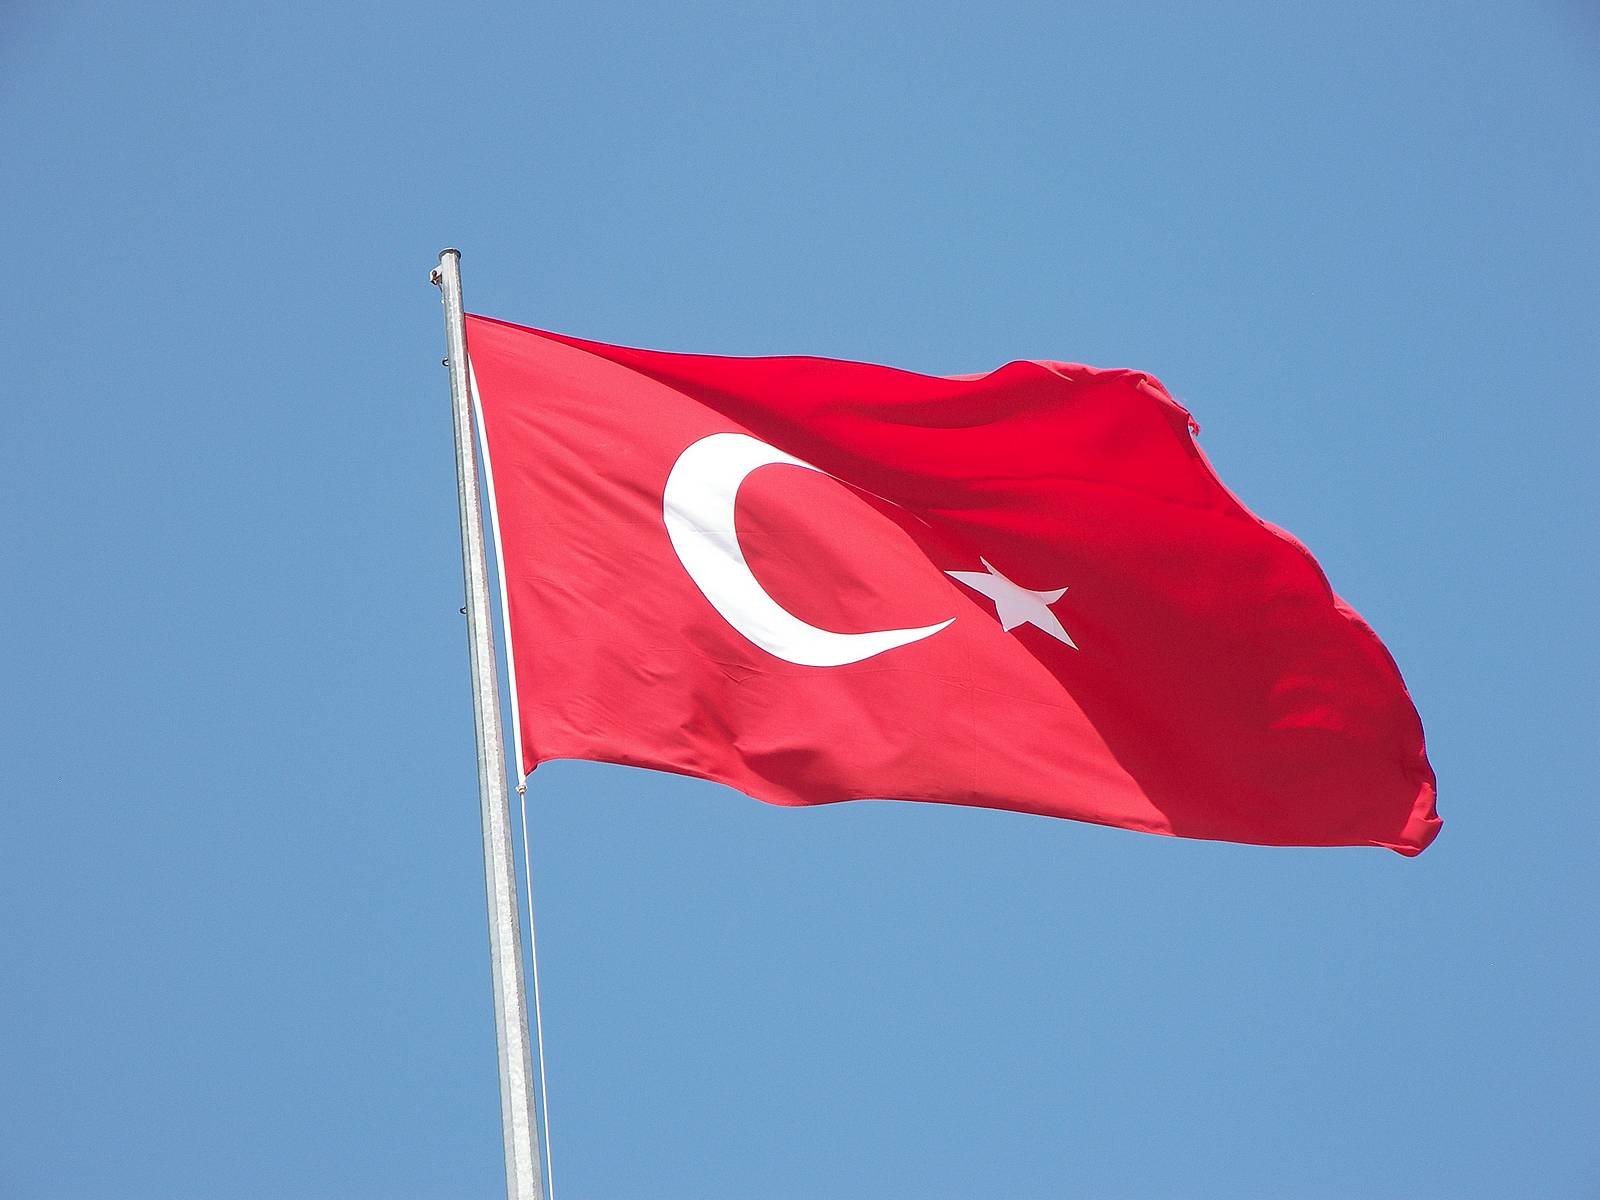 Αναβρασμός στην Τουρκία: Νομοσχέδιο αποποινικοποιεί τον βιaσμo και την κακοποίηση αν ο θύτης παντρευτεί το θύμα (βίντεο)